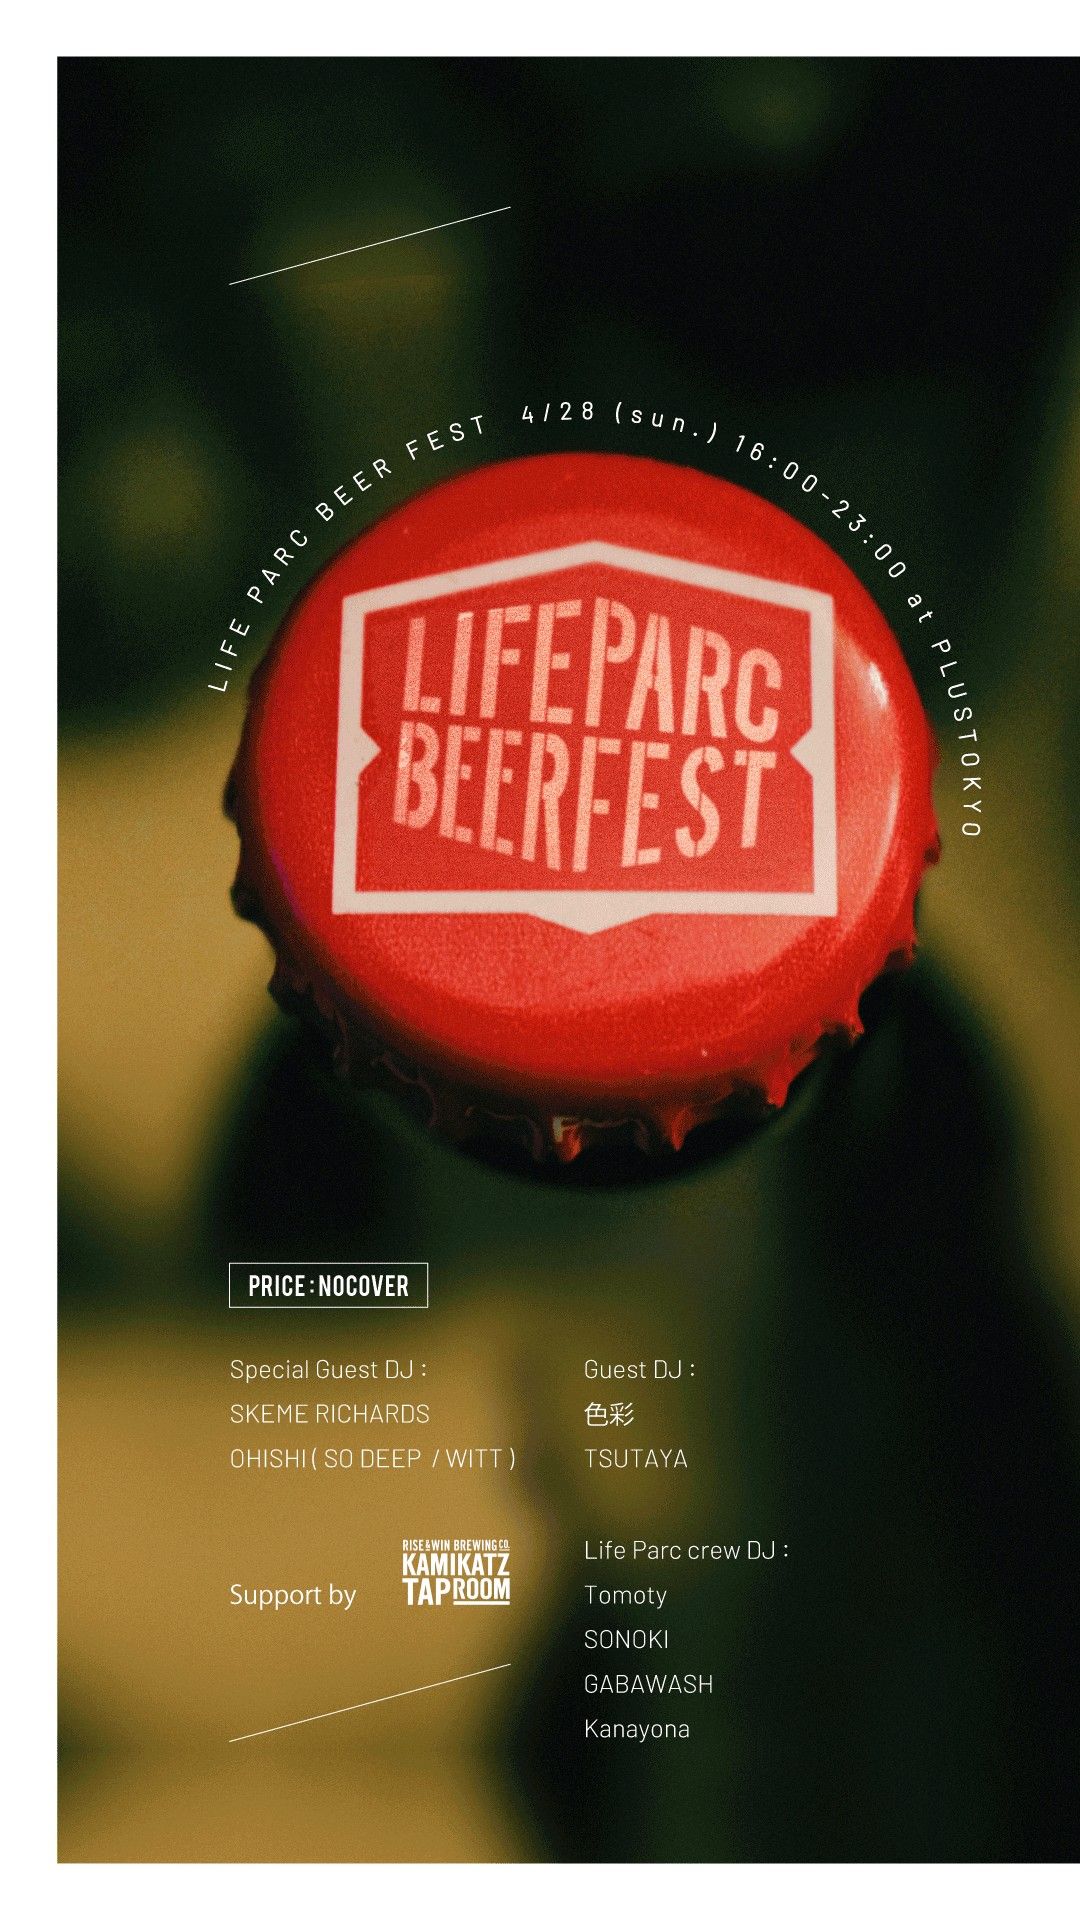 Life Parc Beer Fest 【Guest DJ SKEME RICHARDS & OHISHI 】